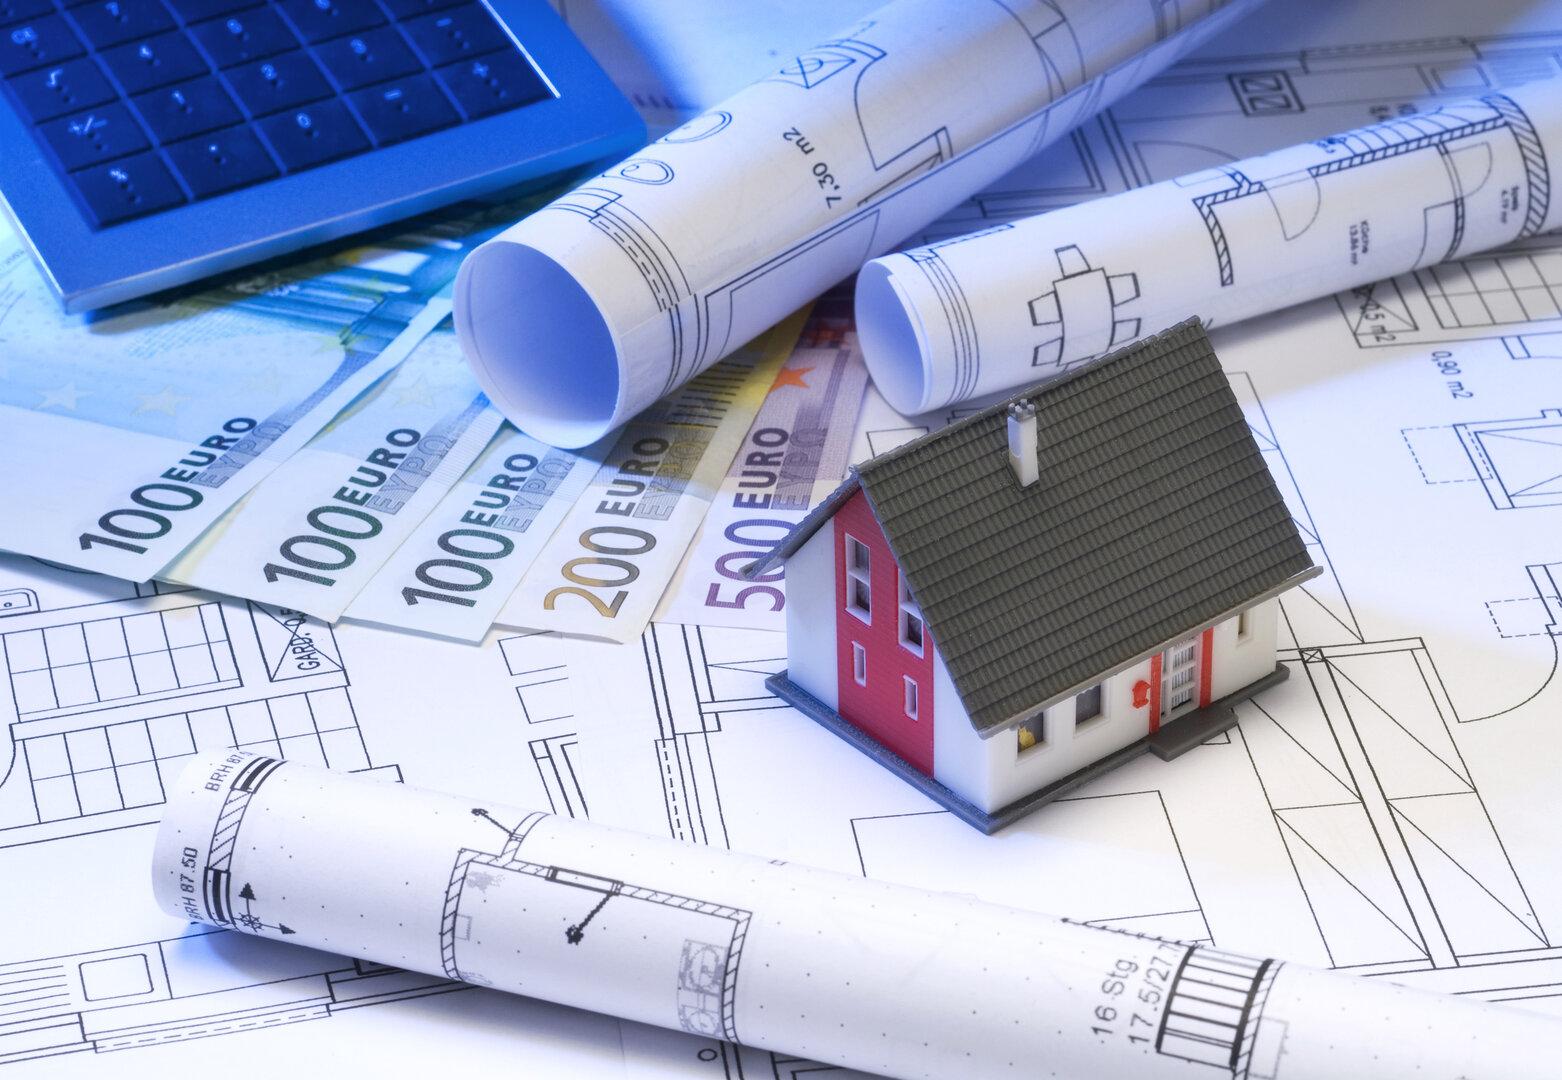 Sammelklage gegen Bauträger: Wie Immobilien-Anleger in die Irre geführt wurden